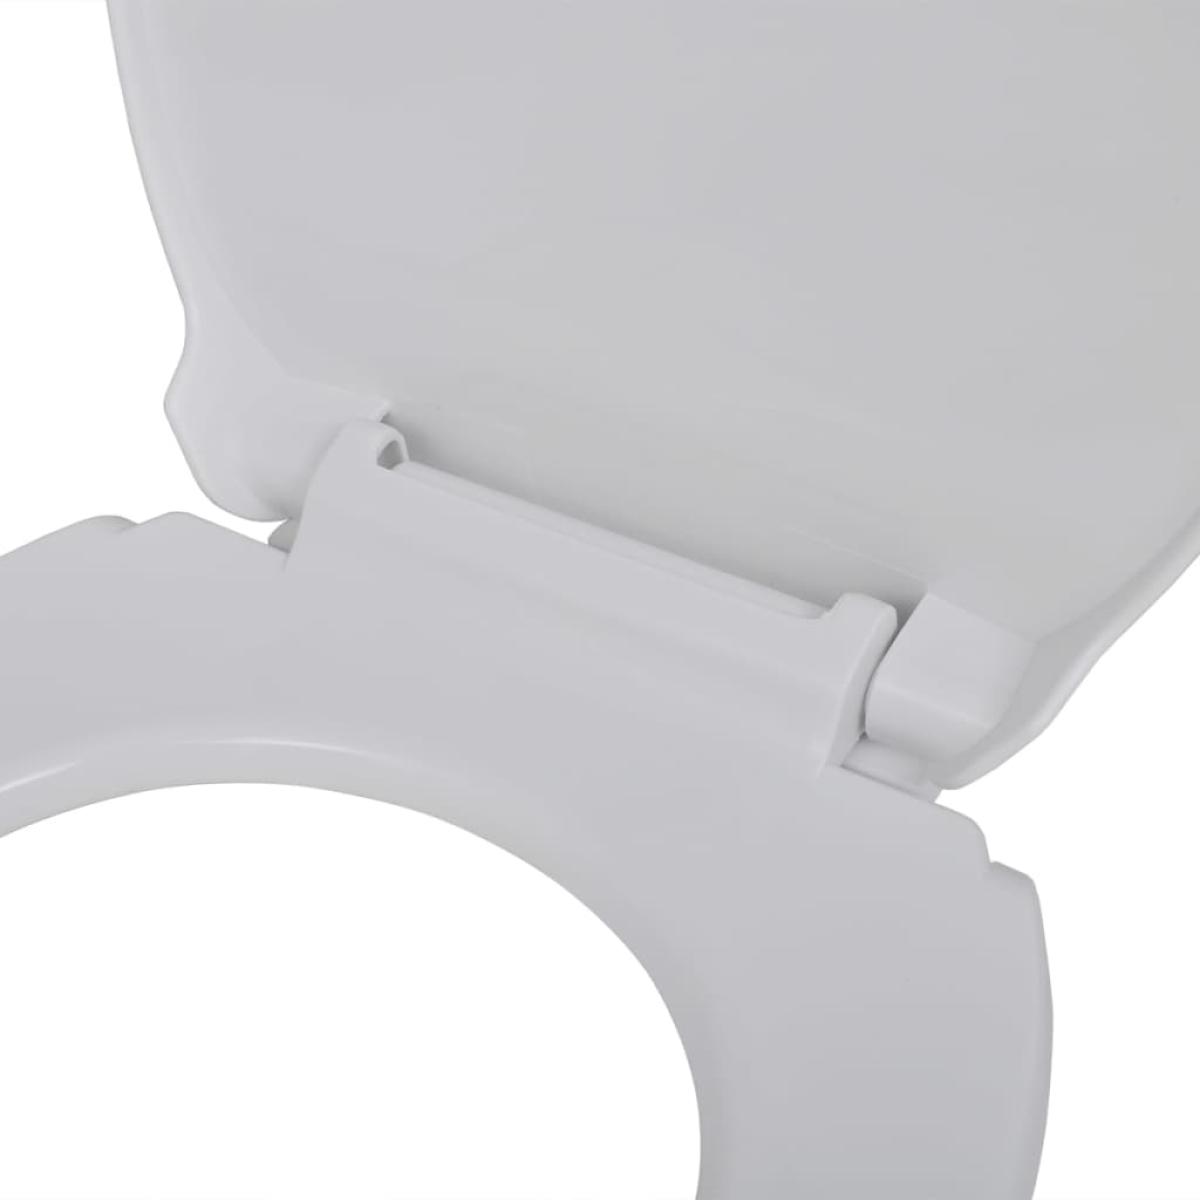 Tapa y asiento de váter con cierre suave ovalado blanco